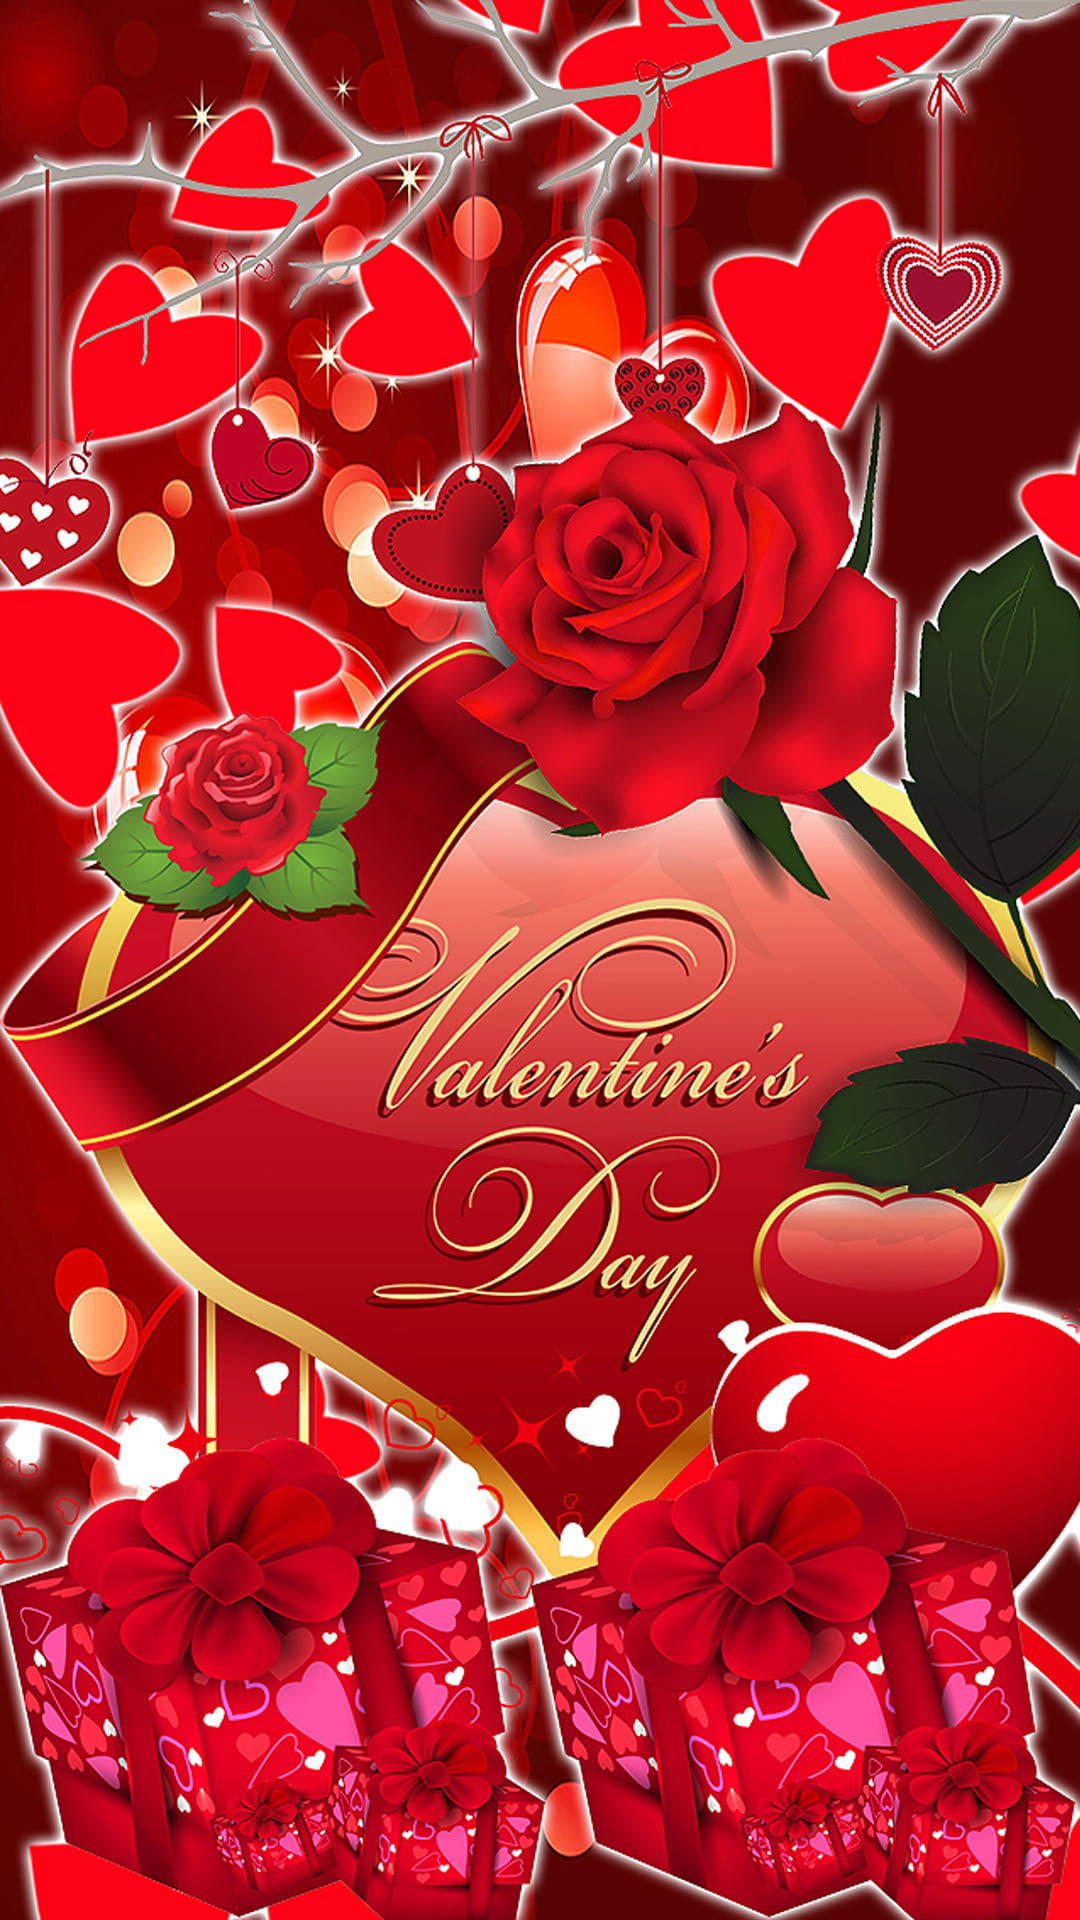 Felizdía De San Valentín Regalos Y Saludos De Corazones Fondo de pantalla